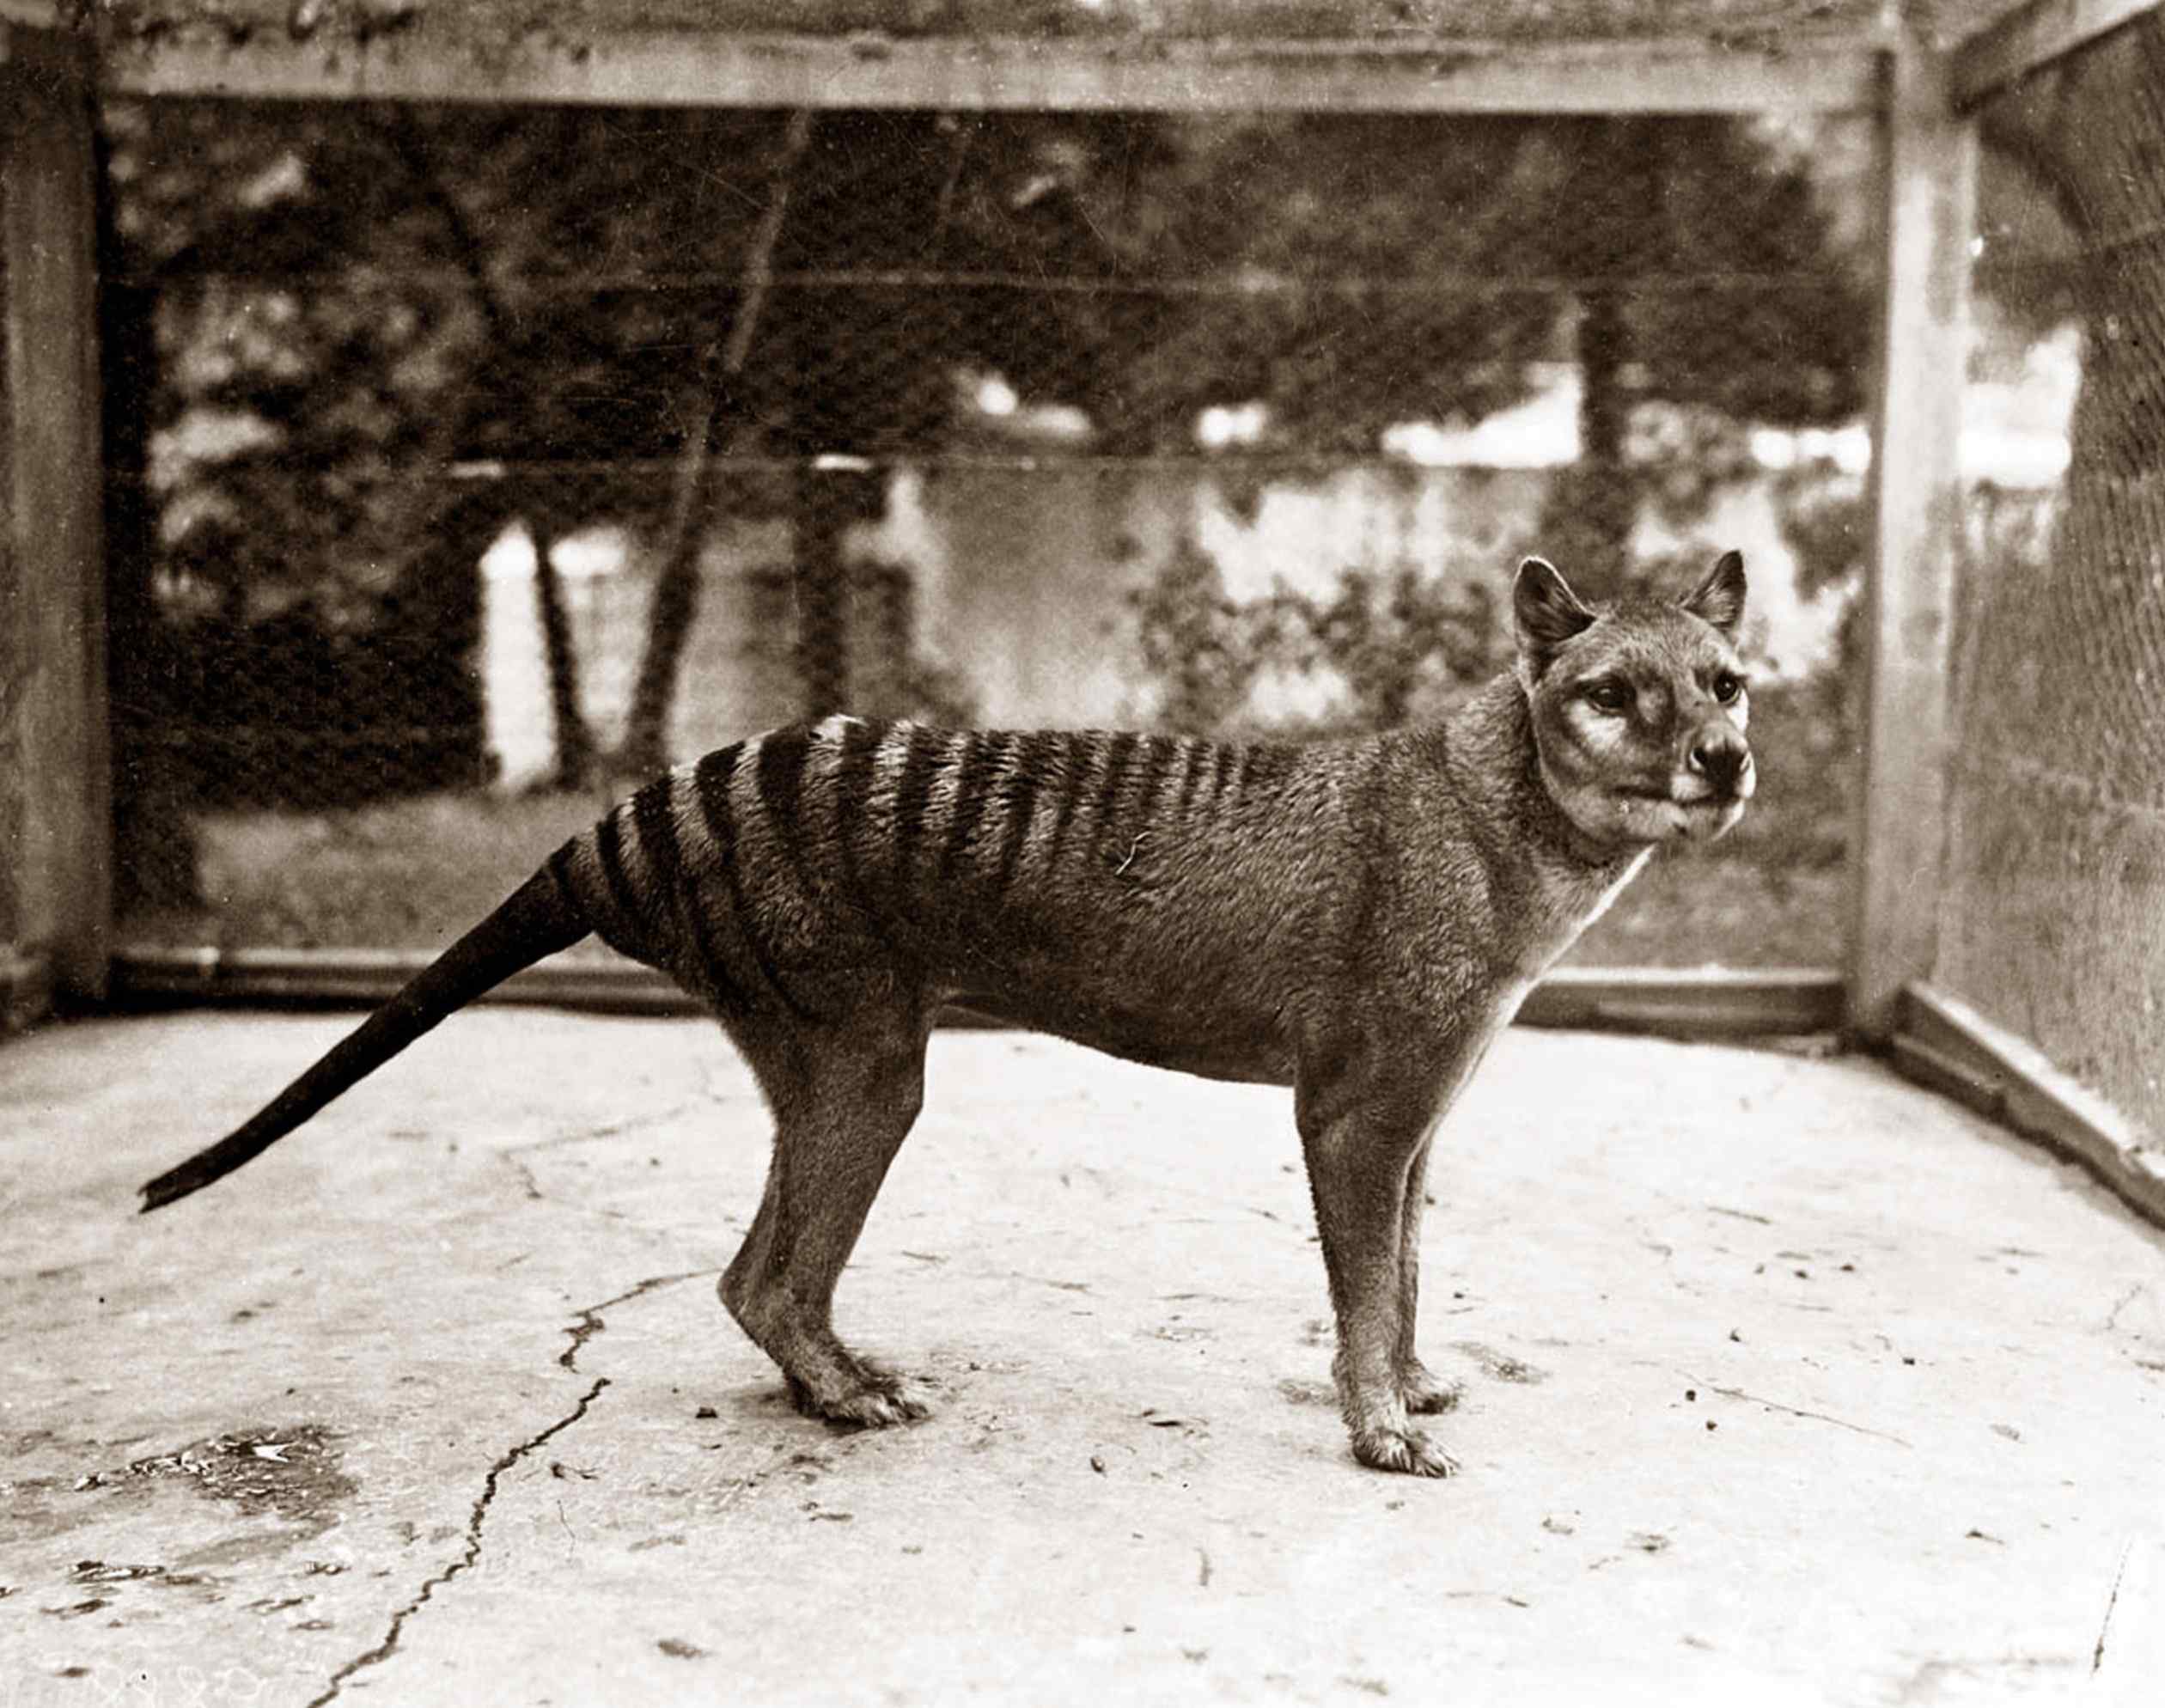 Poslední známý tasmánský tygr zemřel v zajetí v roce 1936. Studie však naznačuje stovky dalších pozorování do 20. století.